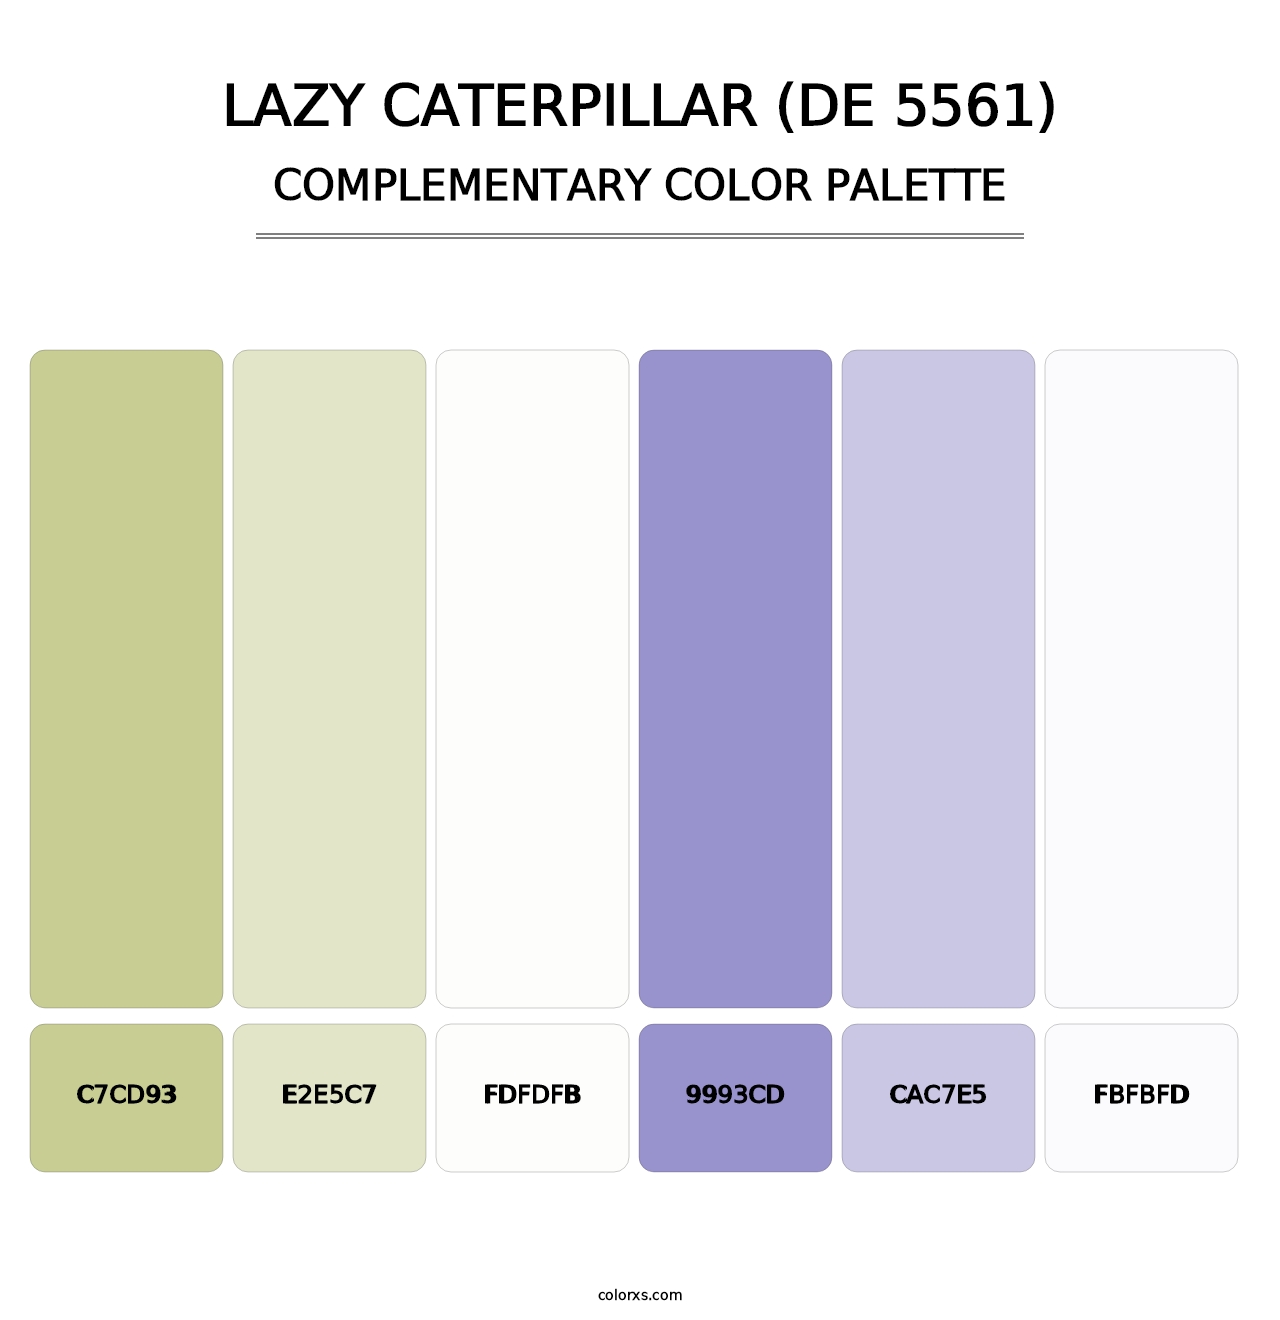 Lazy Caterpillar (DE 5561) - Complementary Color Palette